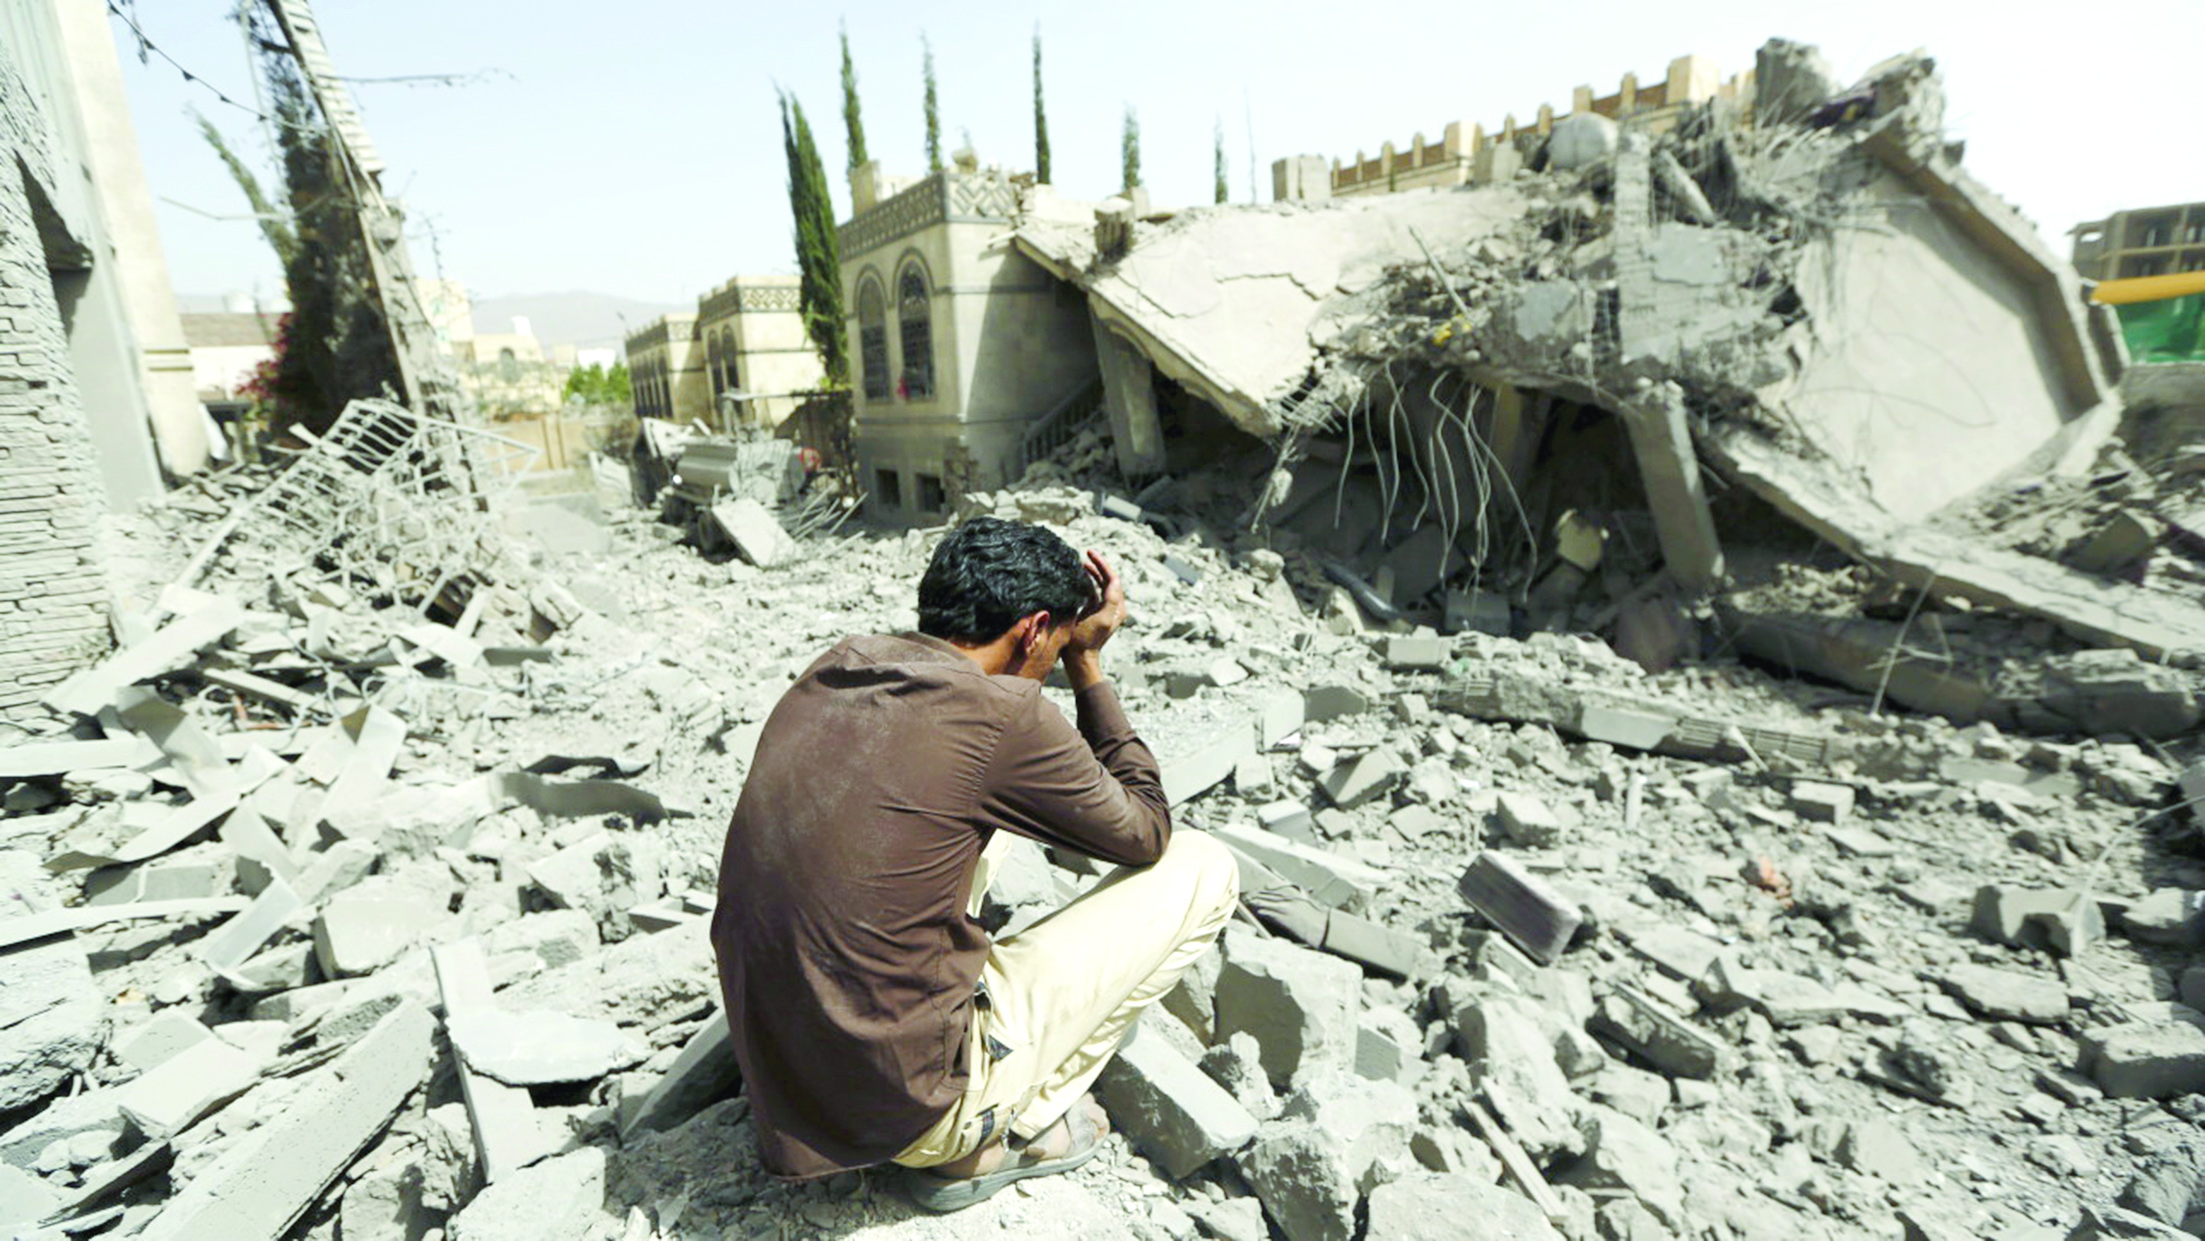 مآسي إنسانية رهيبة جراء الحرب اليمنية

«الشبيبة» تبرز معاناة أسر فقدت عوائلها